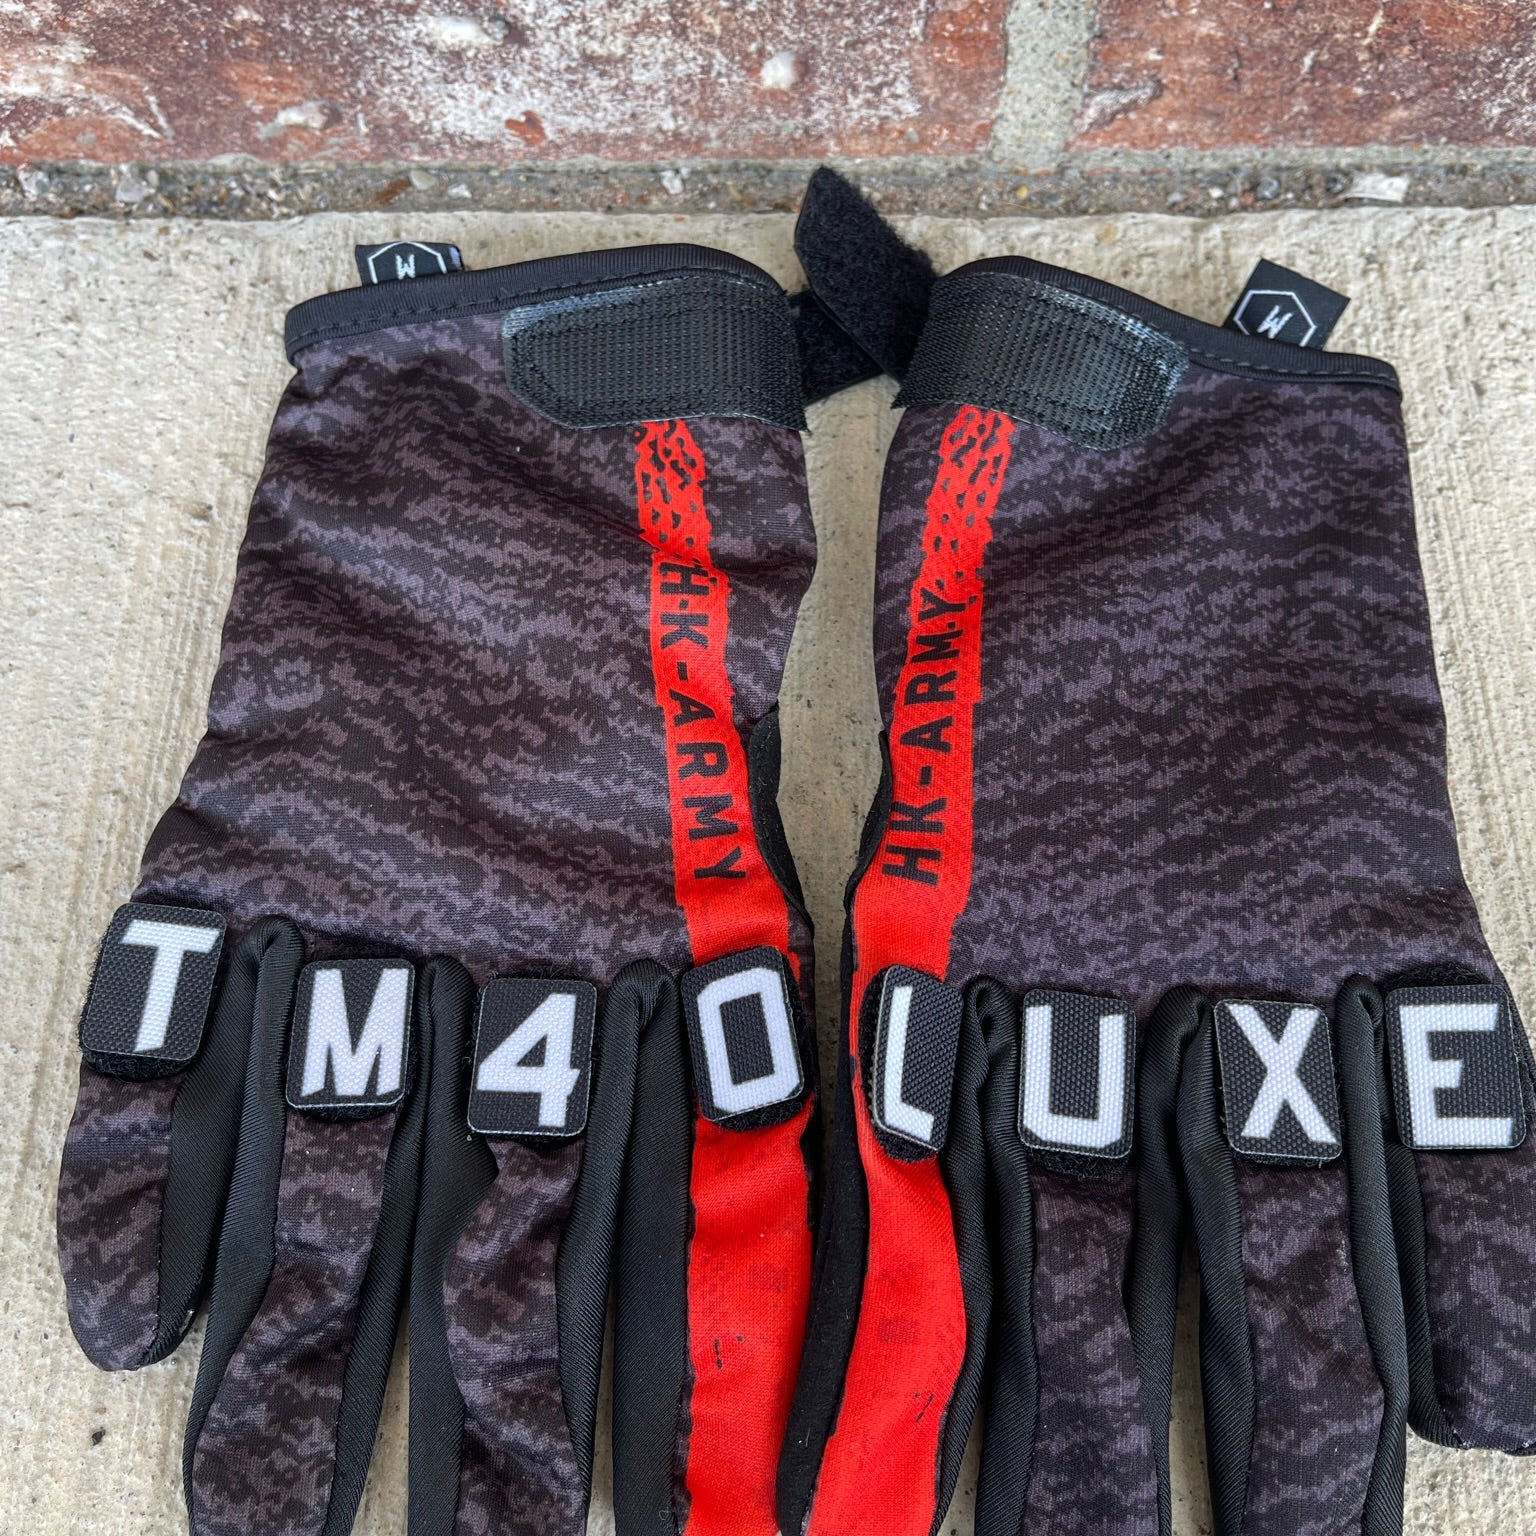 Used HK Army Knucklez Paintball Gloves - Freeline Pro Black/Red - Medium